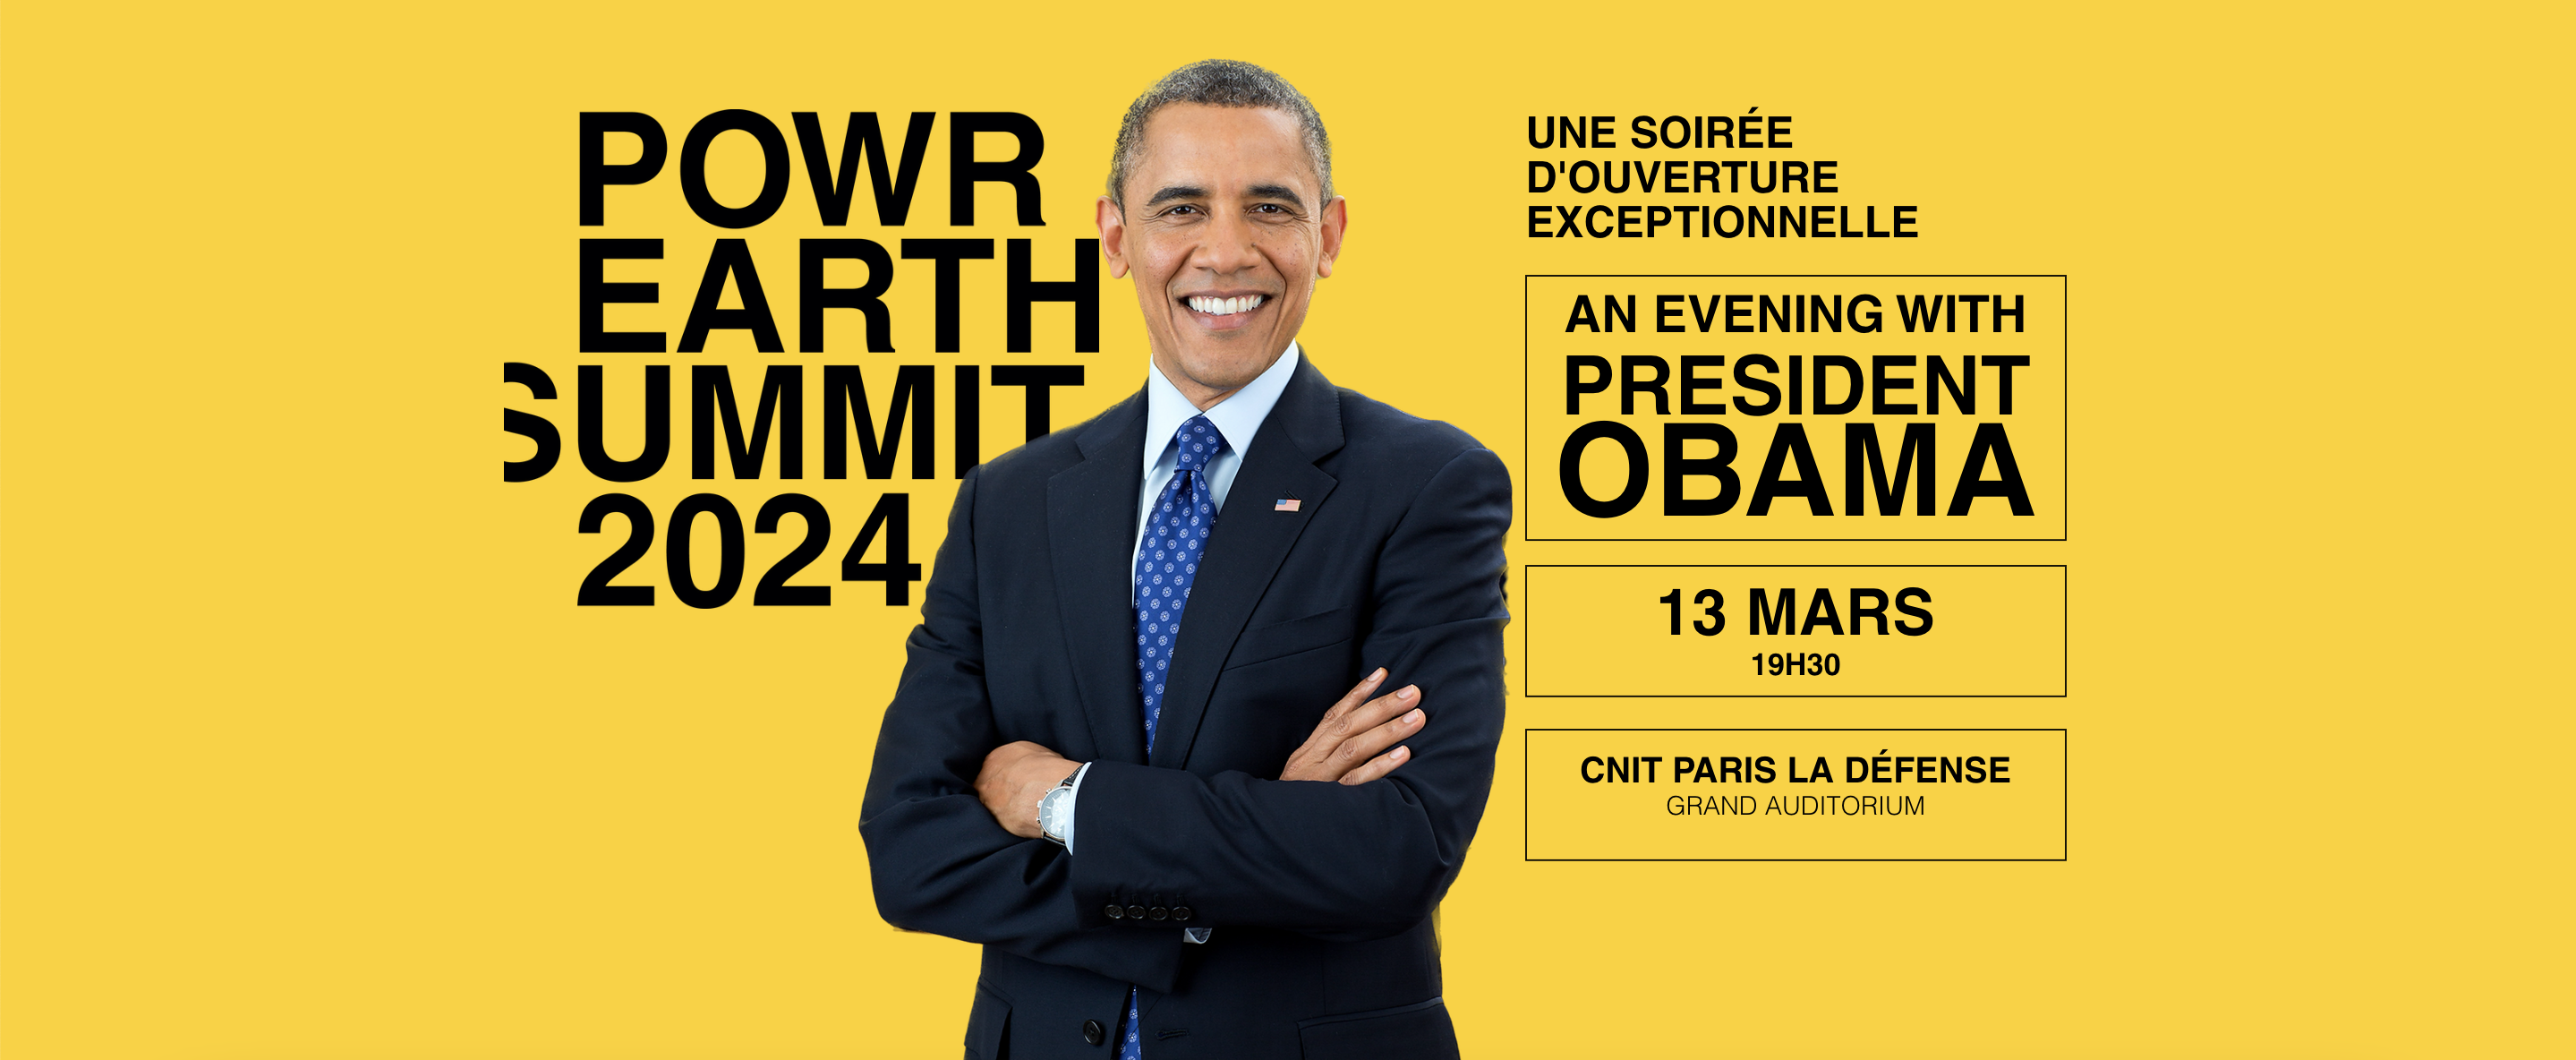 Powr Earth Summit 2024, une soirée d'ouverture exceptionnelle en présence du Président Obama, le 13 mars 2024 à 19h30 au Grand Auditorium du CNIT Paris La Défense